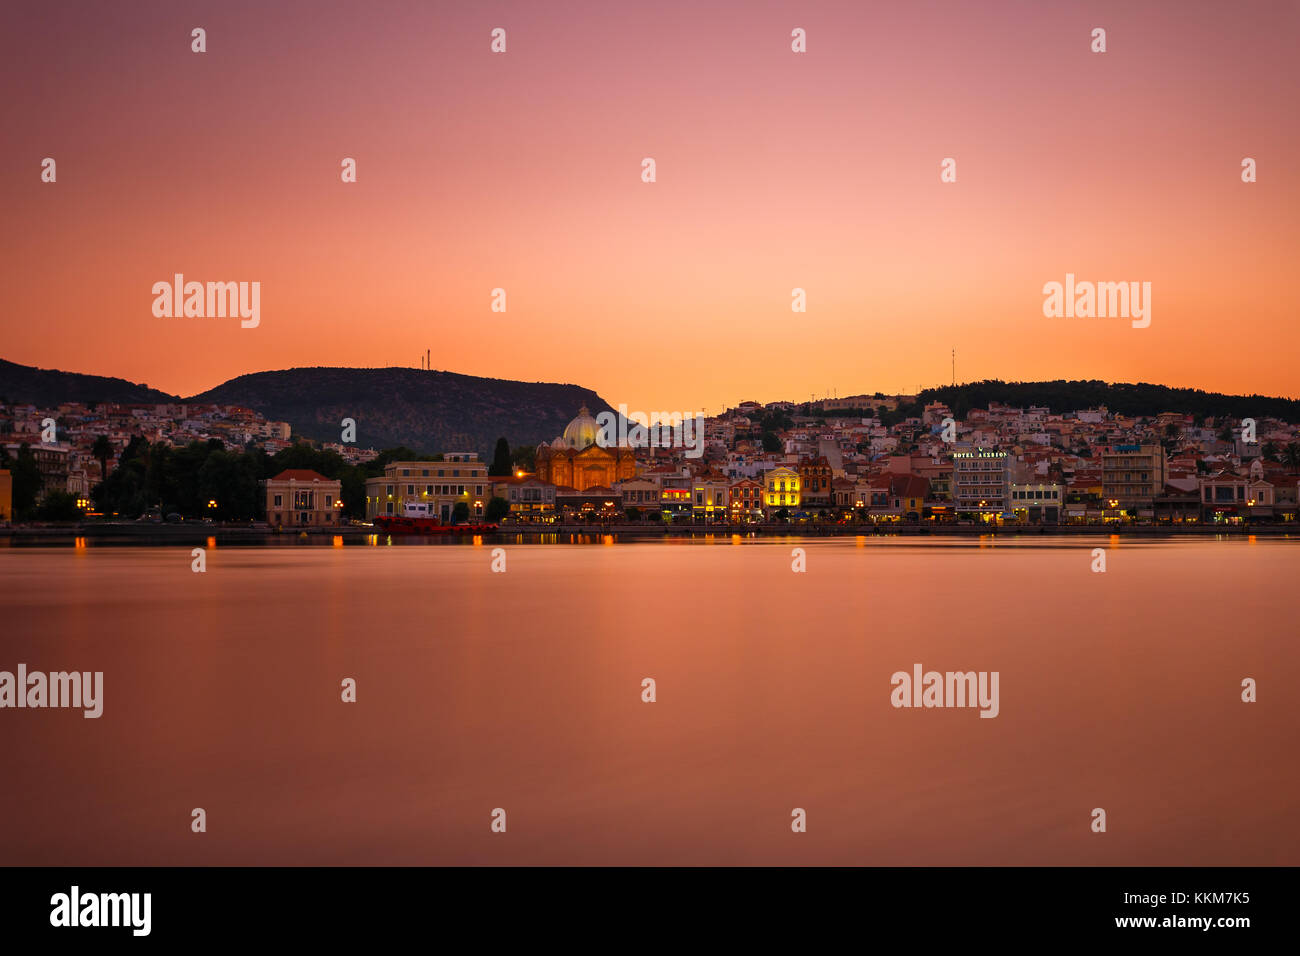 Panoramica della città di mytilene in lesvos Island, Grecia nel pomeriggio.  mitilene è la capitale e porto dell'isola di Lesbo Foto stock - Alamy